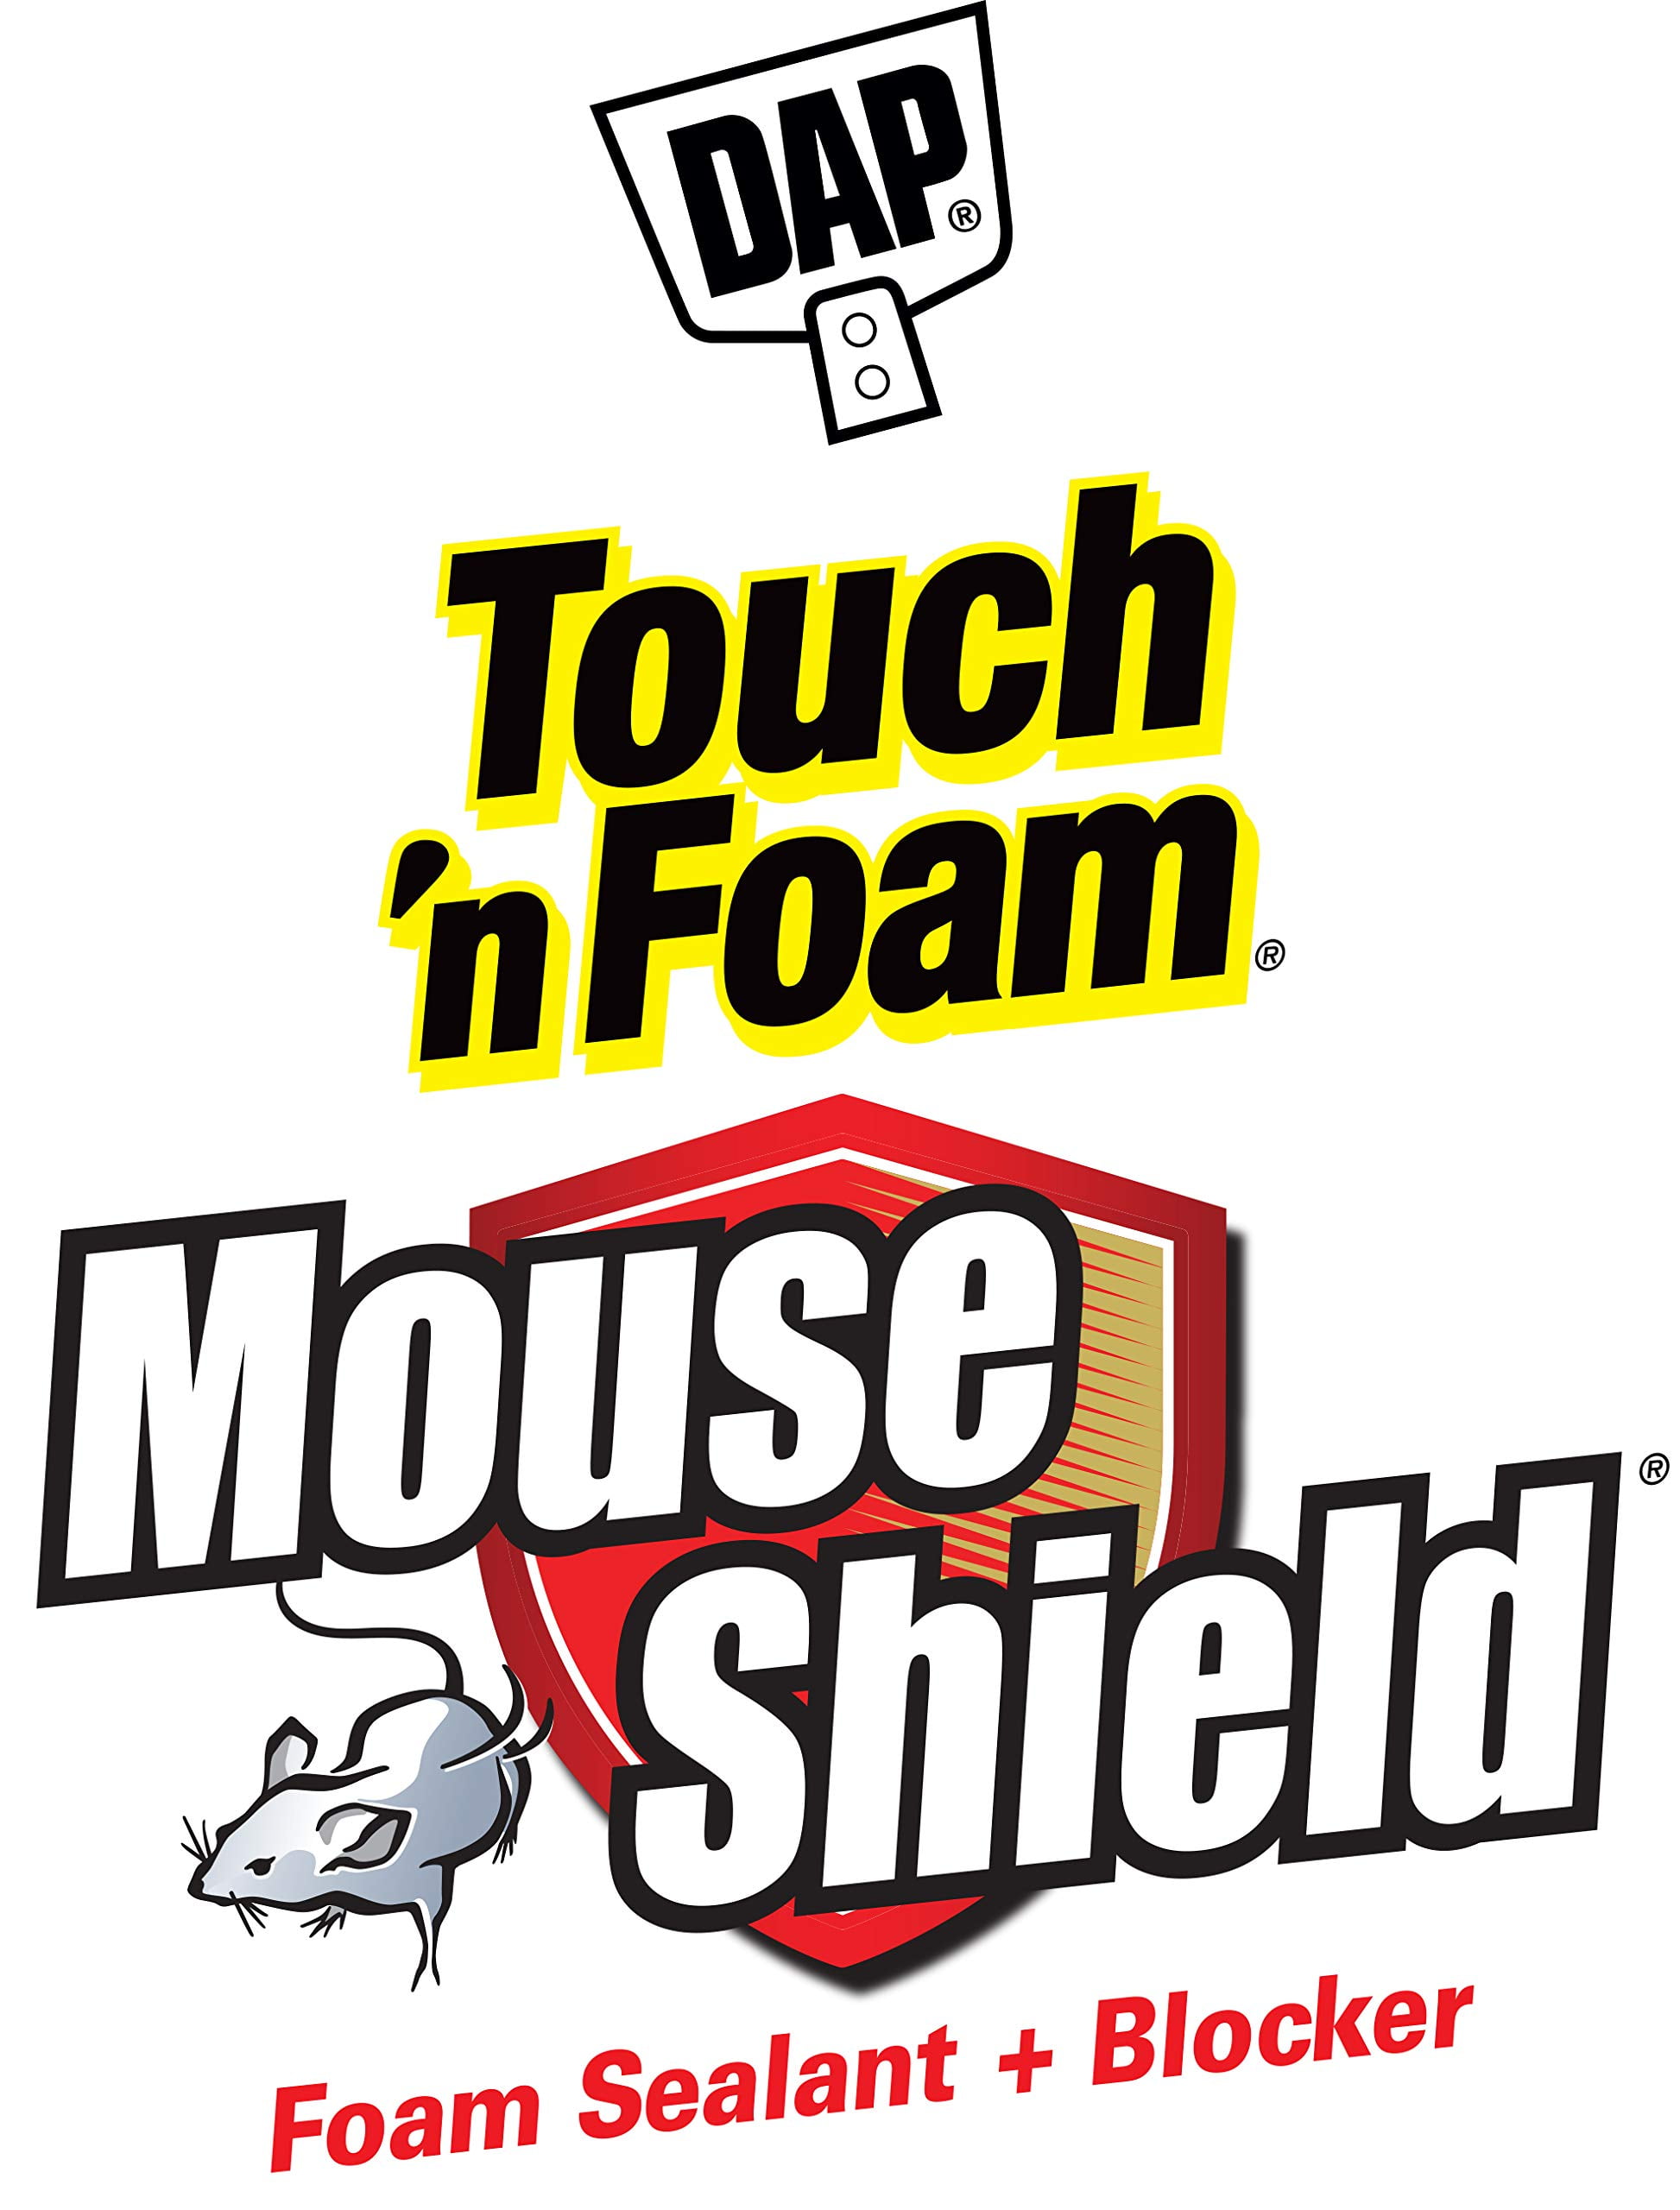 Touch 'n Foam Mouse Shield 12 oz. Foam Sealant & Blocker